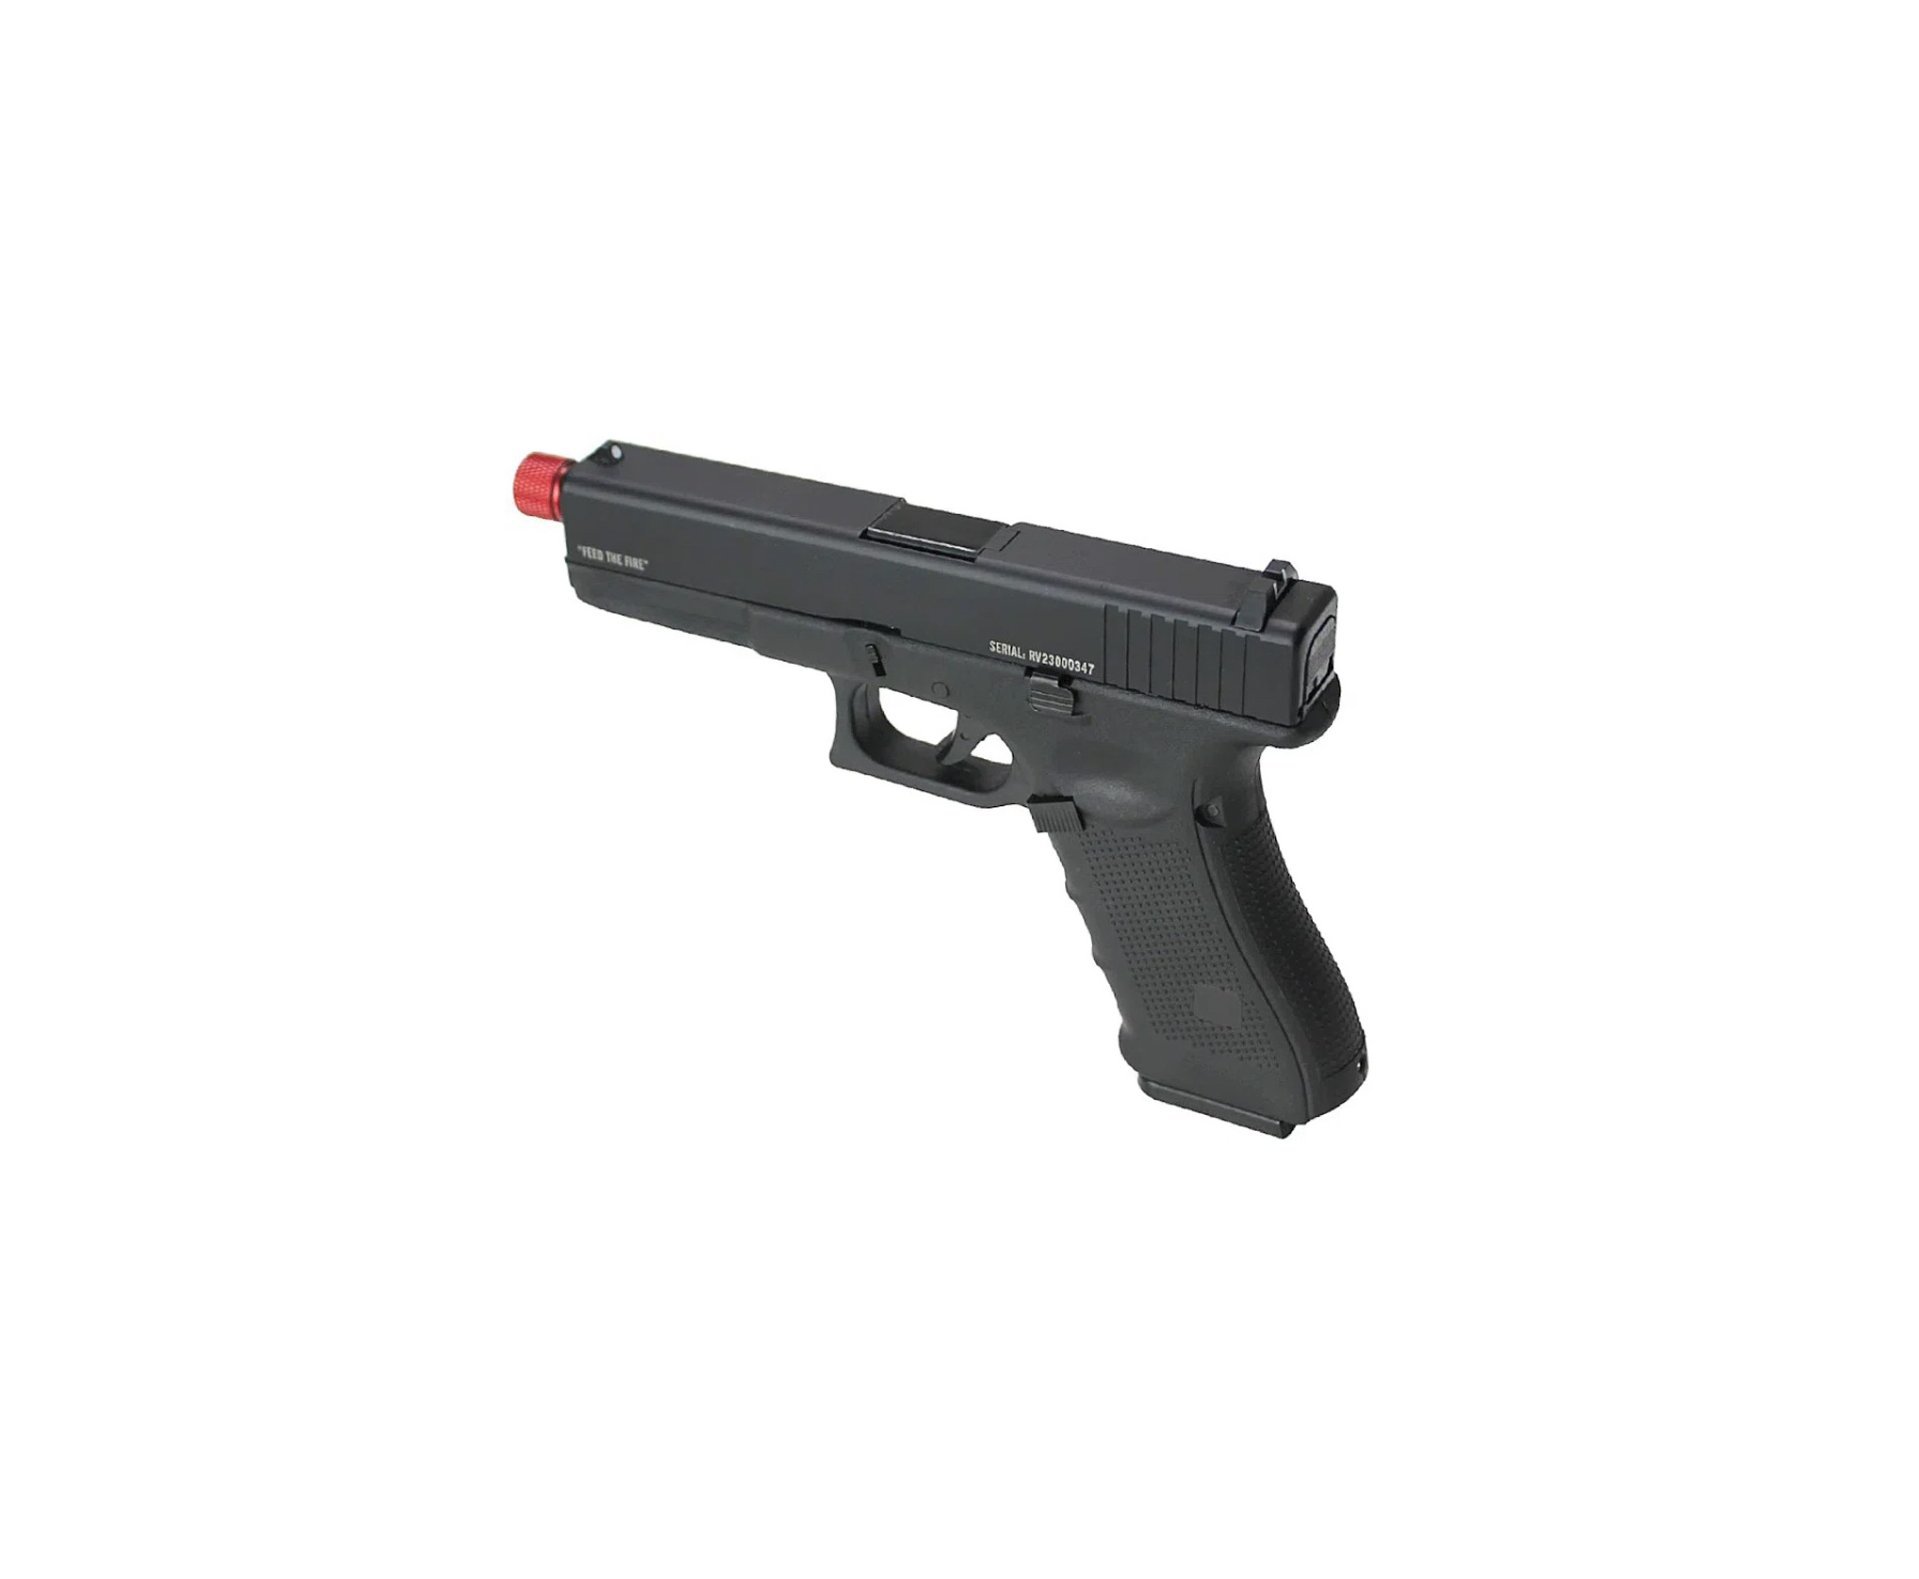 Pistola de Airsoft GBB Glock G17 Raven Full Metal Green Gas 6mm - TAG + Case + Green Gas + BB’S + Óleo de Silicone + Alvos